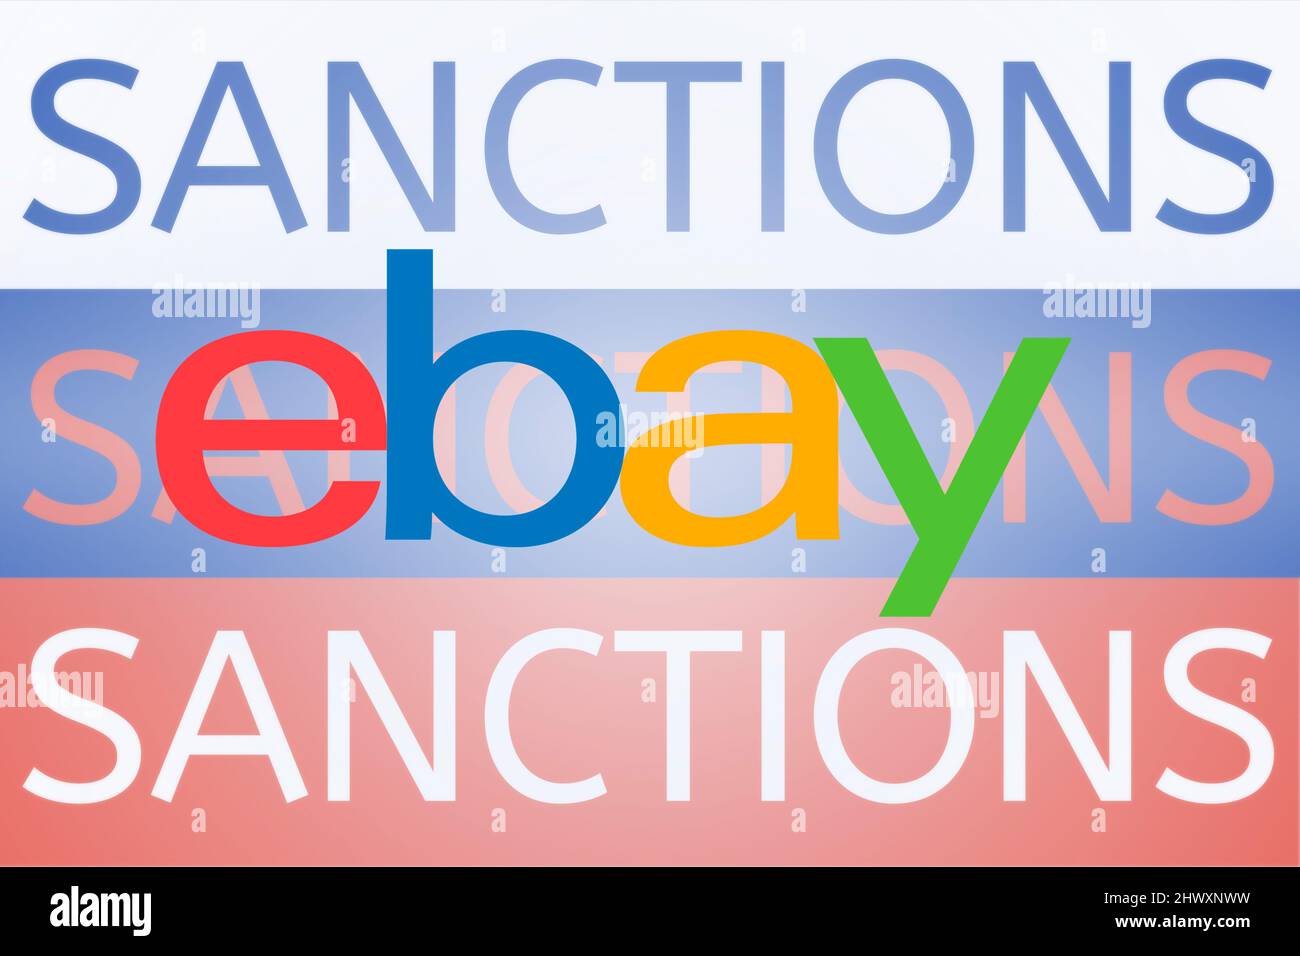 EBay-Logo vor der russischen Flagge. Sanktionen gegen Russland wegen seiner Invasion in der Ukraine. März 2022, San Francisco, USA Stockfoto